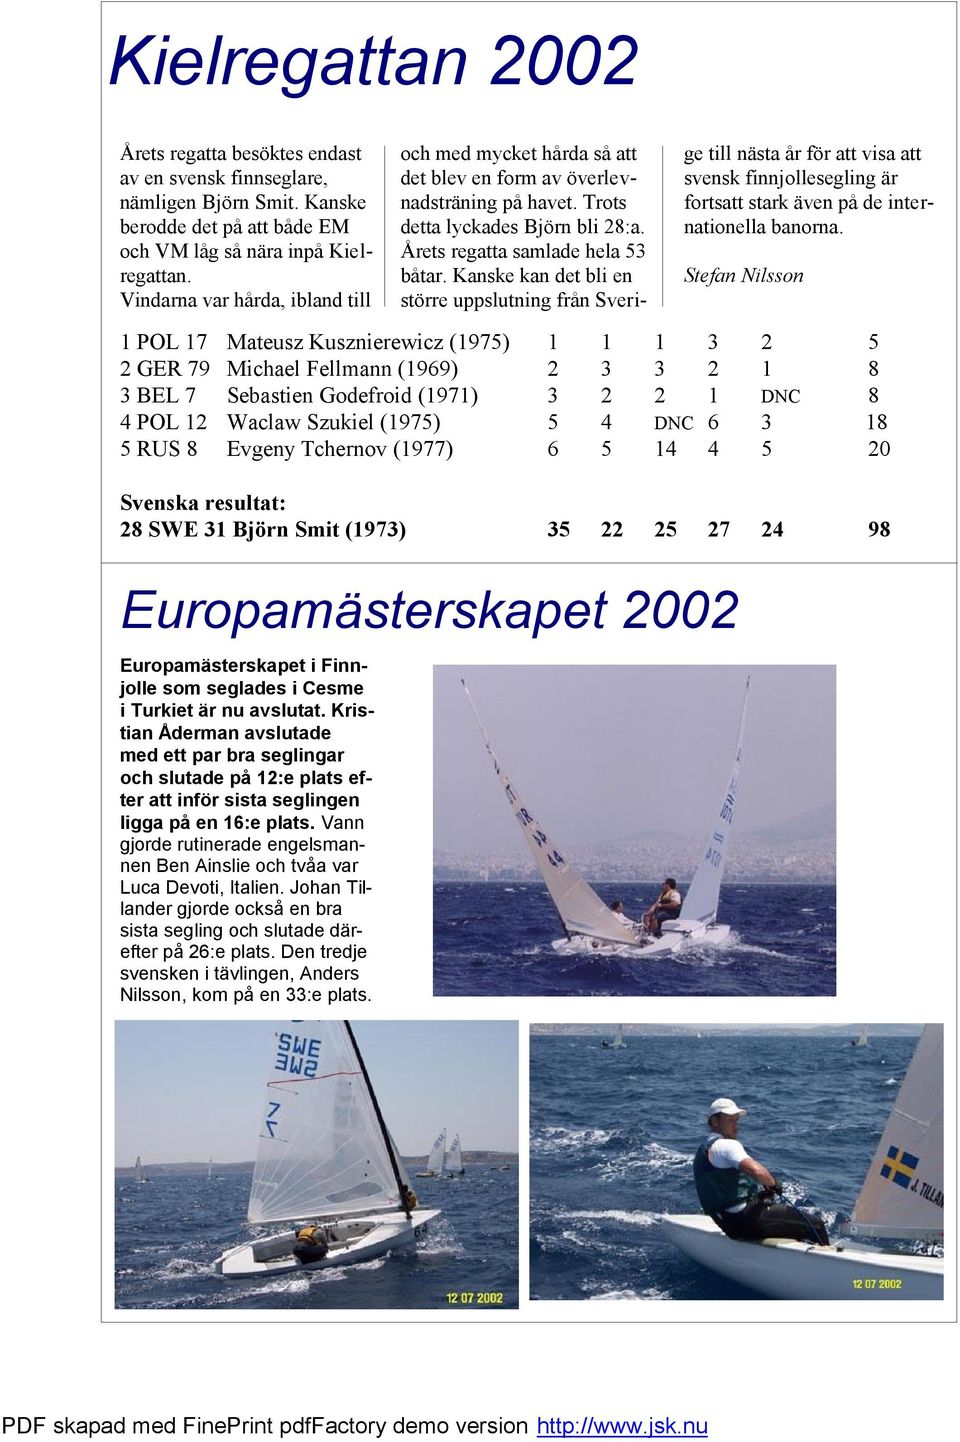 Kristian Åderman avslutade med ett par bra seglingar och slutade på 12:e plats efter att inför sista seglingen ligga på en 16:e plats.